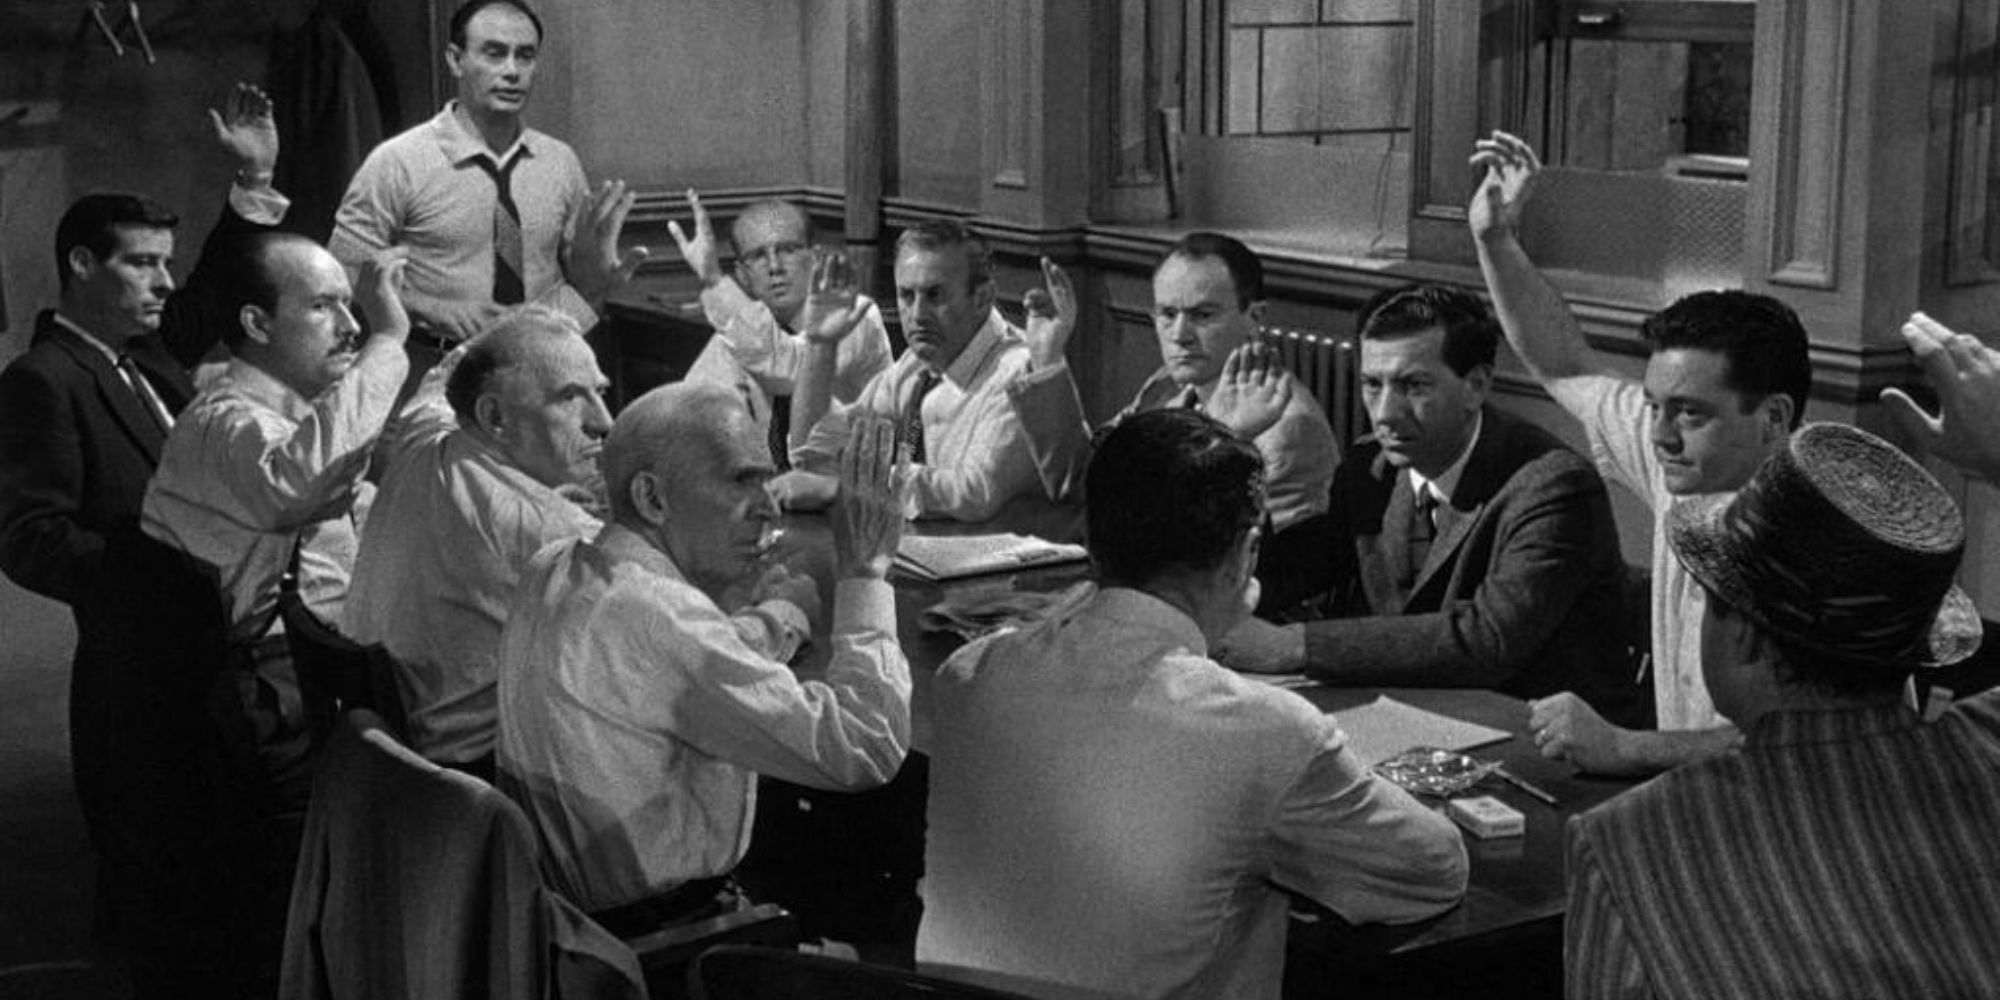 12 pria duduk di meja dan berdebat